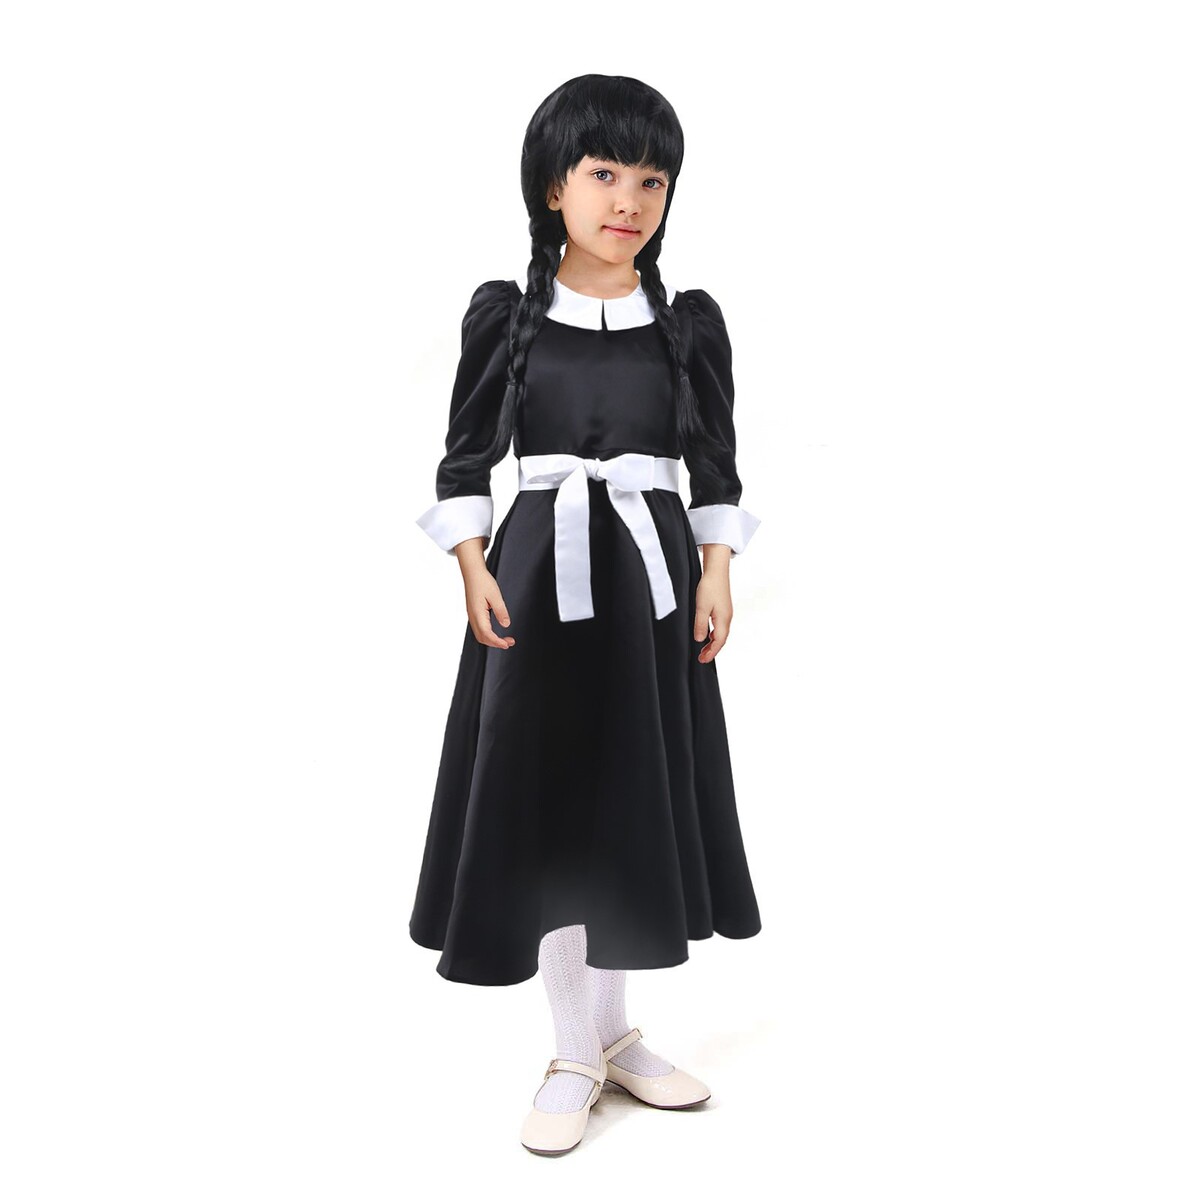 Карнавальное черное платье с белым воротником,атлас,п/э,р-р34,р134 атлас и аксис т4